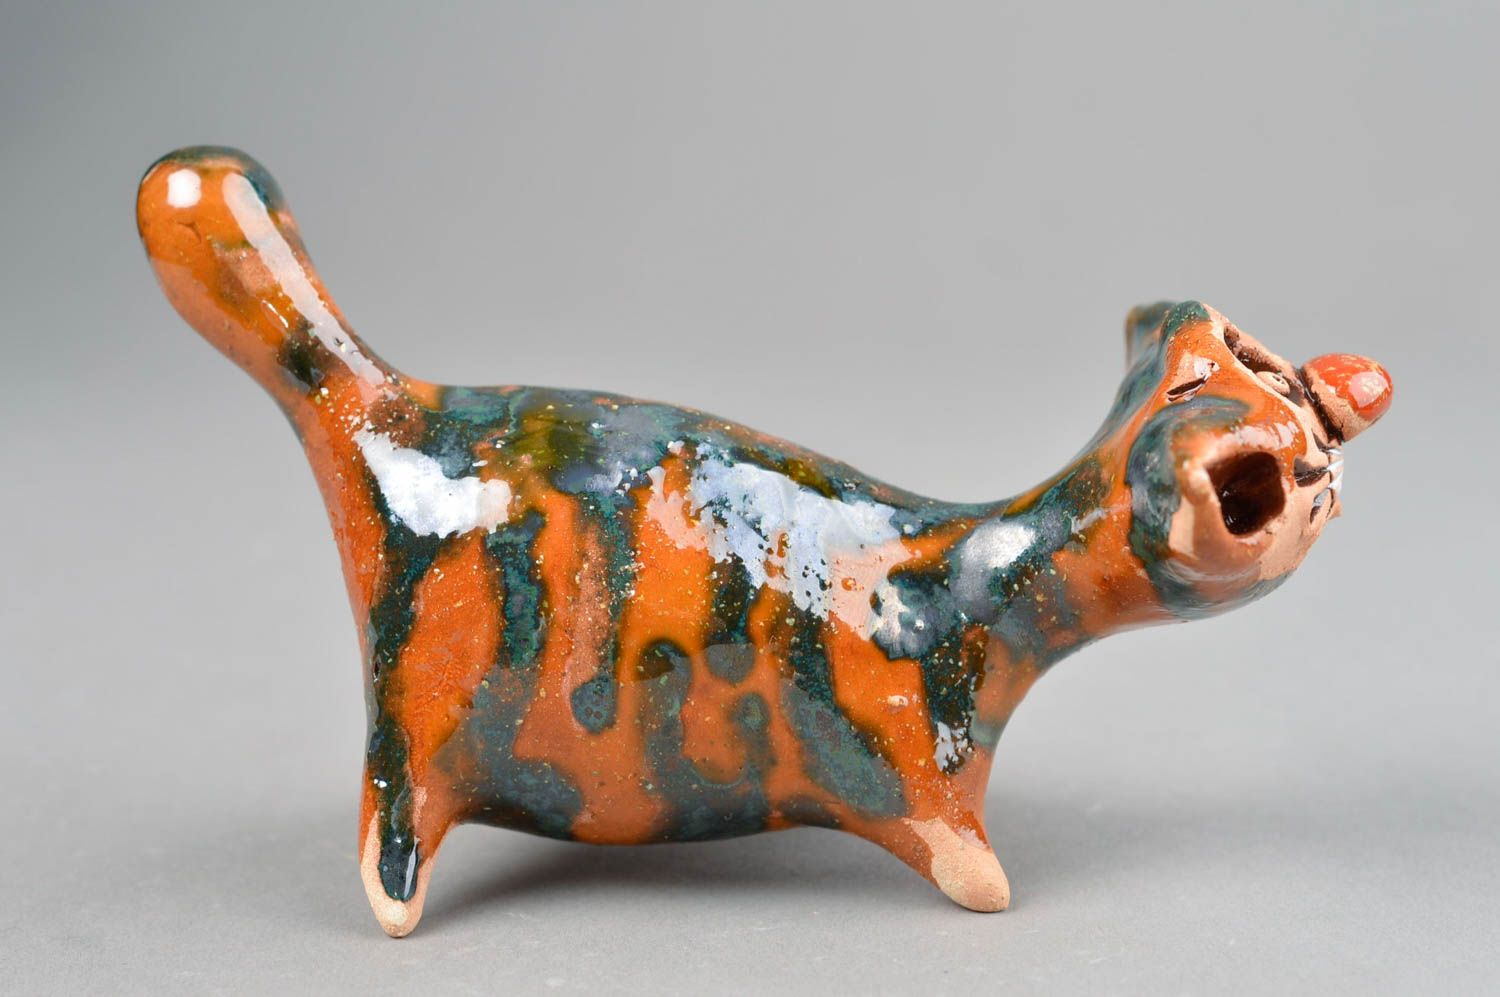 Handmade ceramic figurines ceramic animals cat decor gift ideas for women photo 4